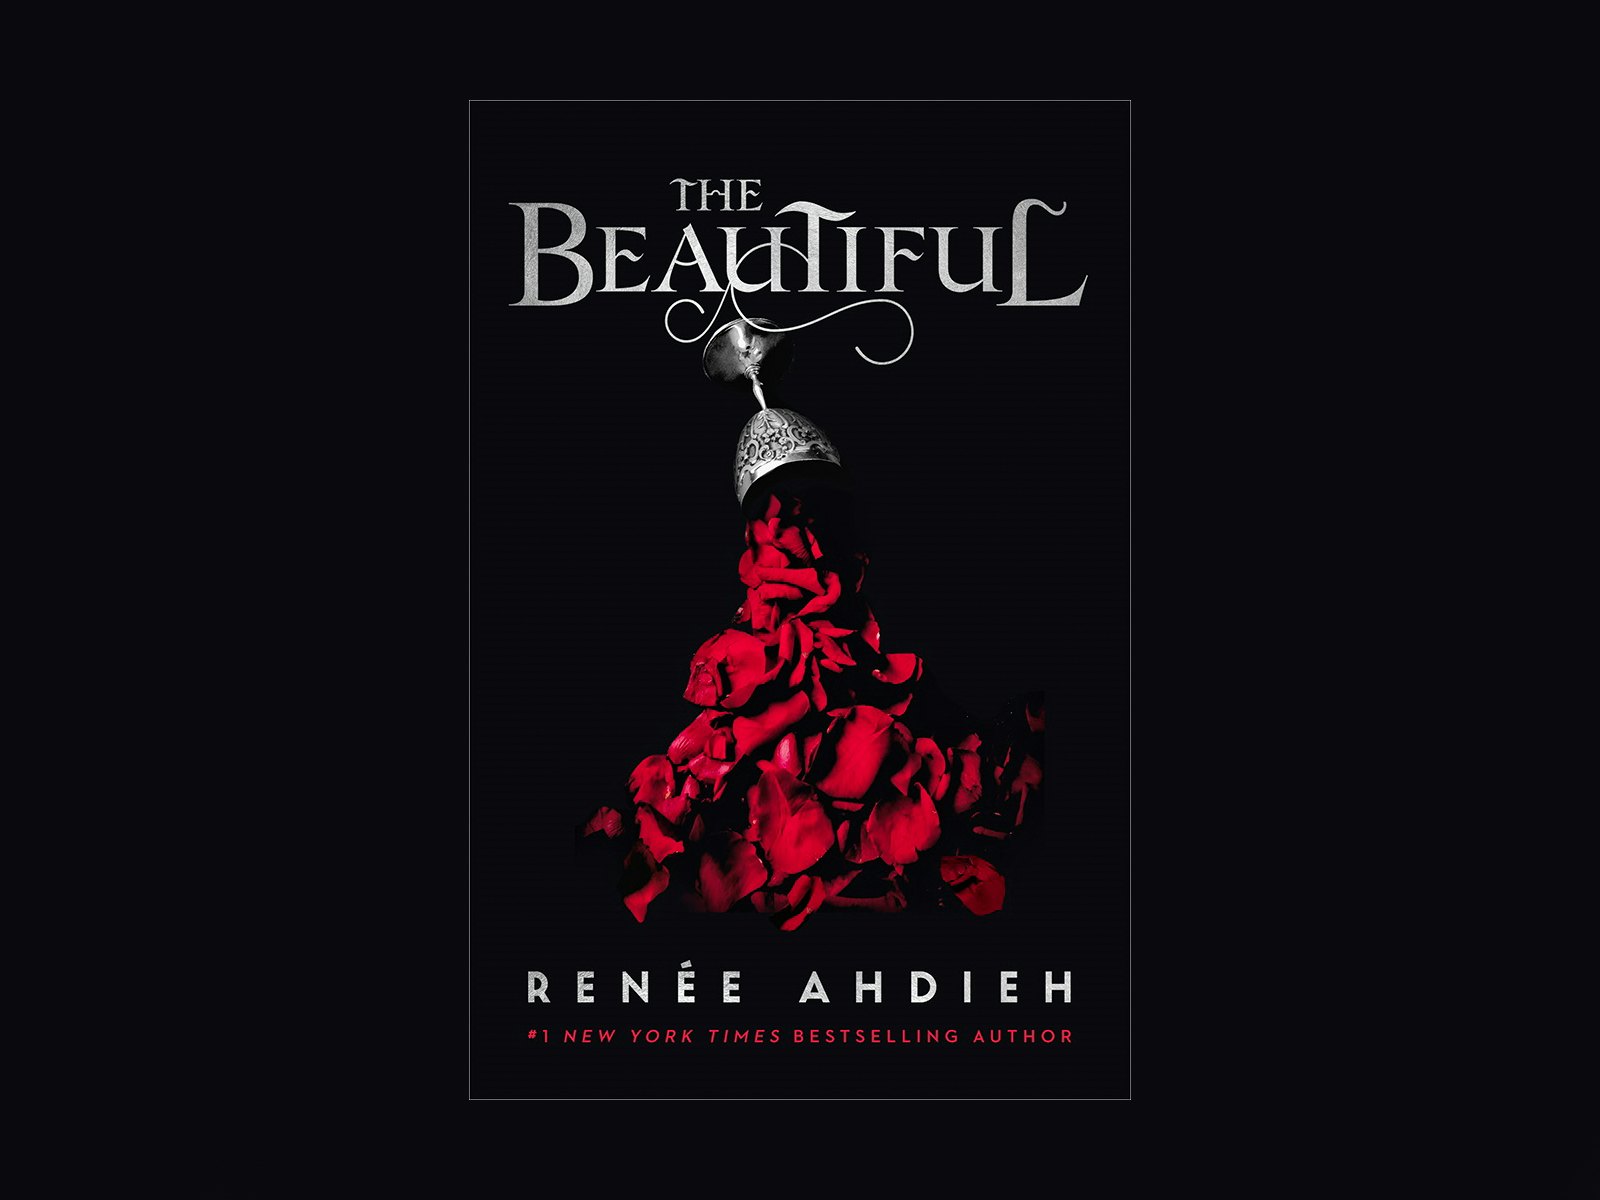 the beautiful by renee ahdieh series